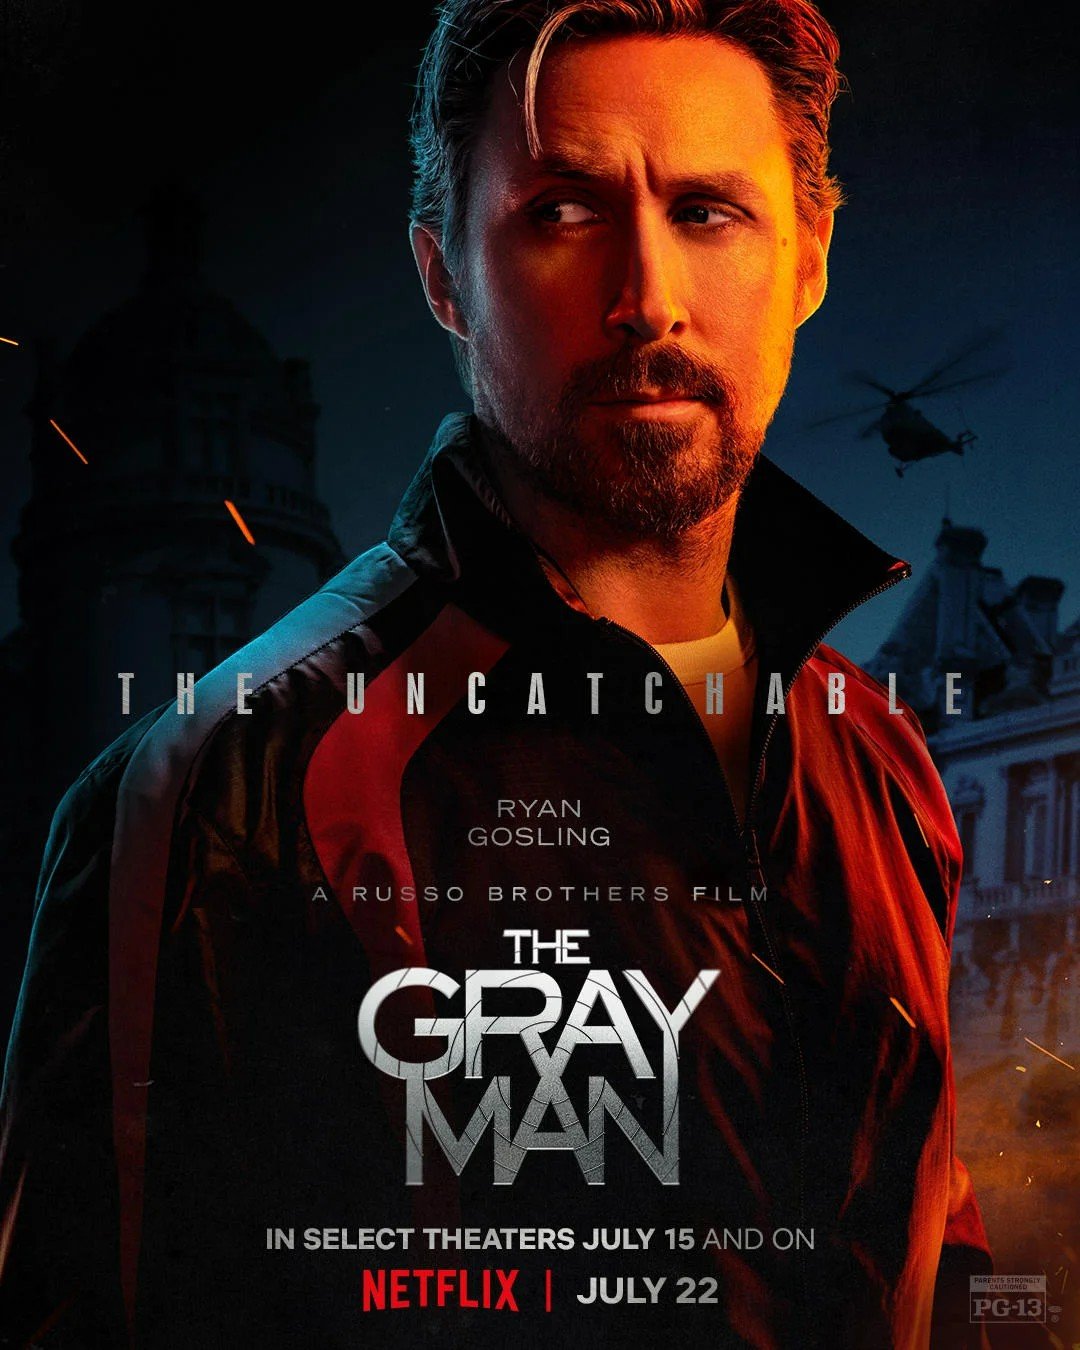 Wagner Moura terá papel em The Gray Man, novo filme da Netflix com